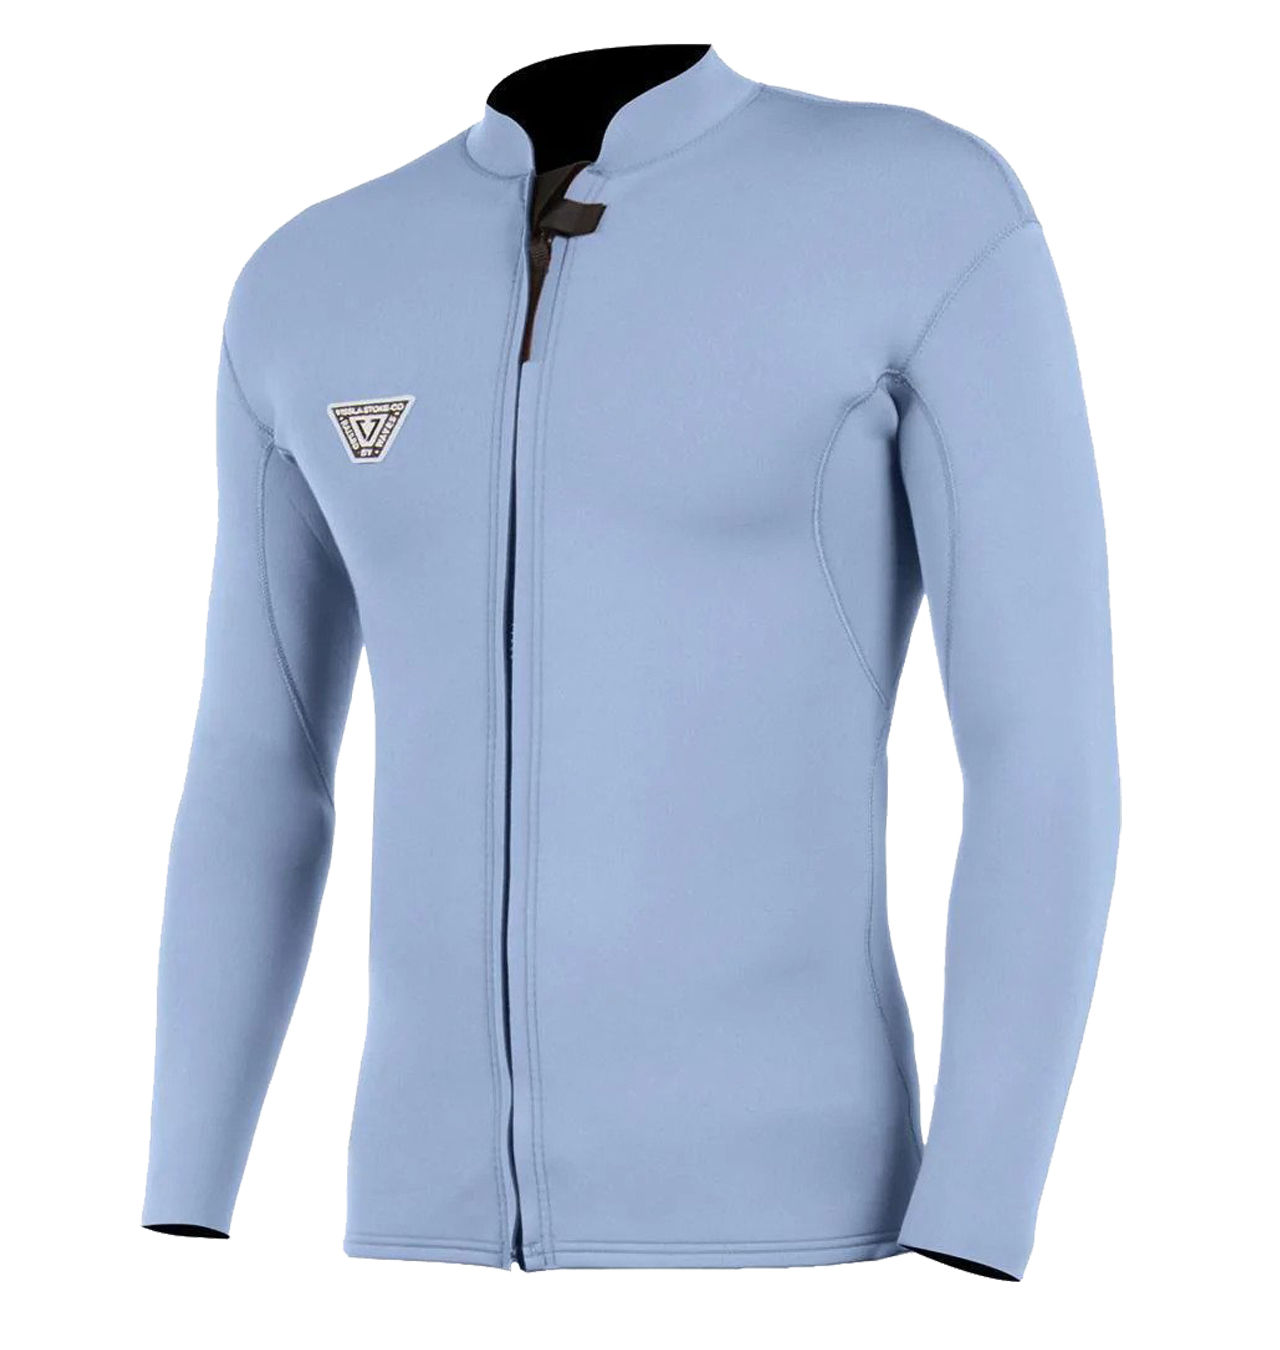 Vissla - Solid Sets 2Mm Front Zip Long Sleeve Wetsuit Jacket - Harbor Blue